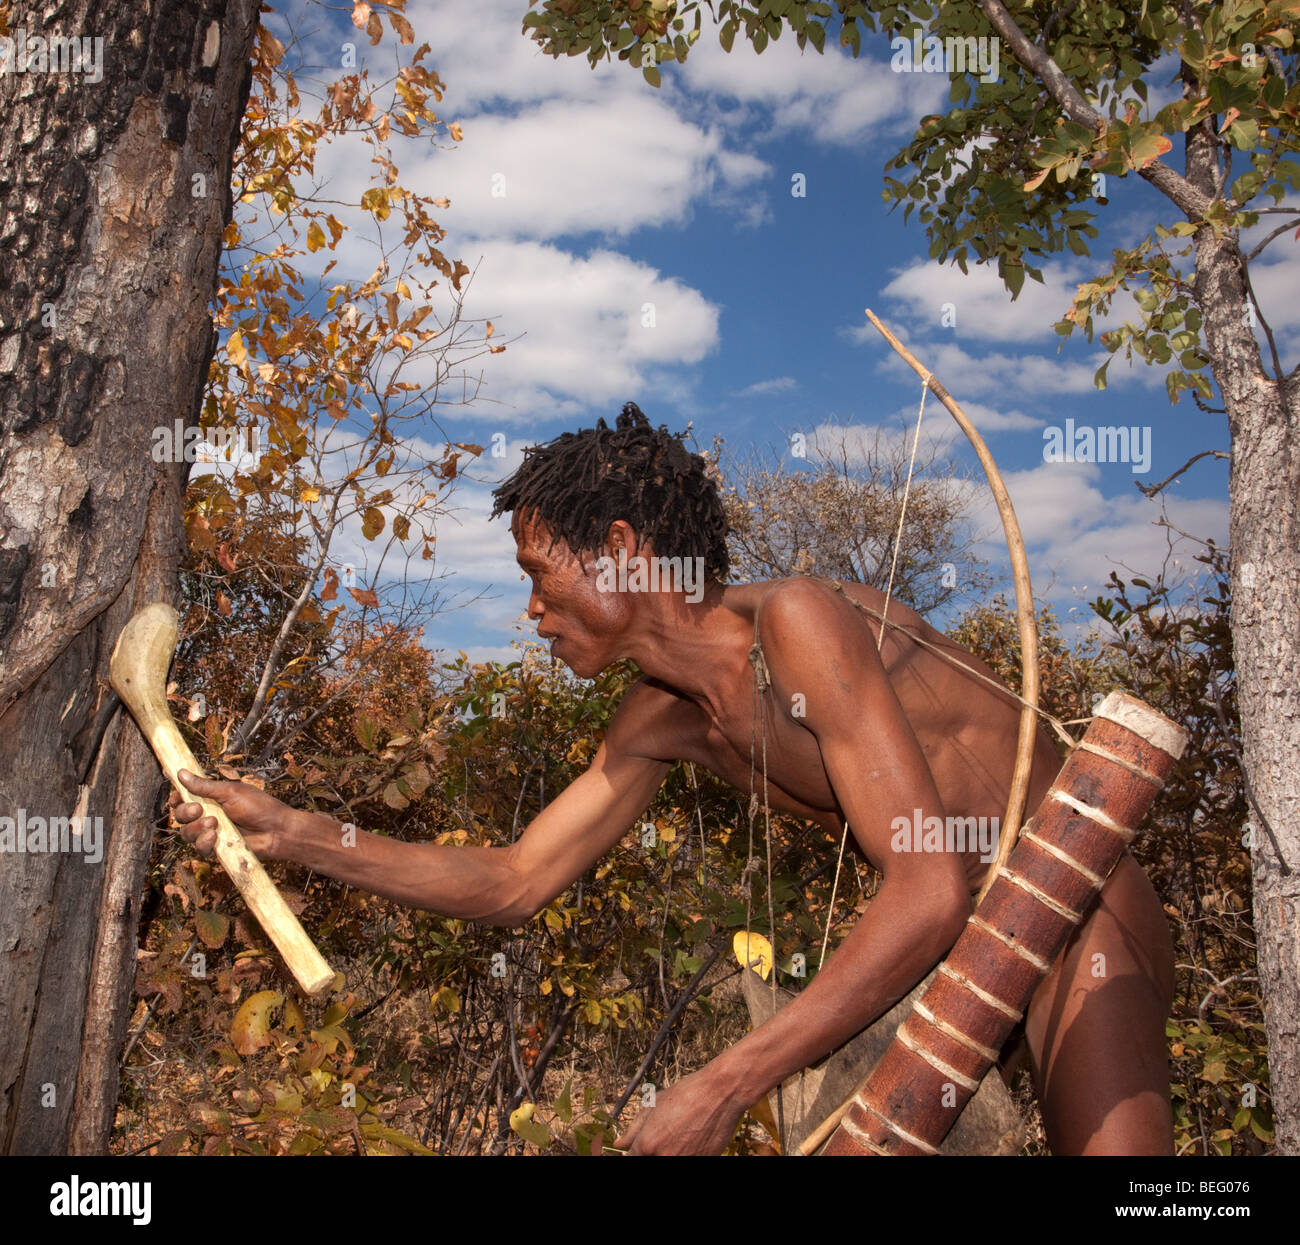 Village de San. Un chasseur à la recherche d'insectes comestibles en touchant un arbre. Banque D'Images